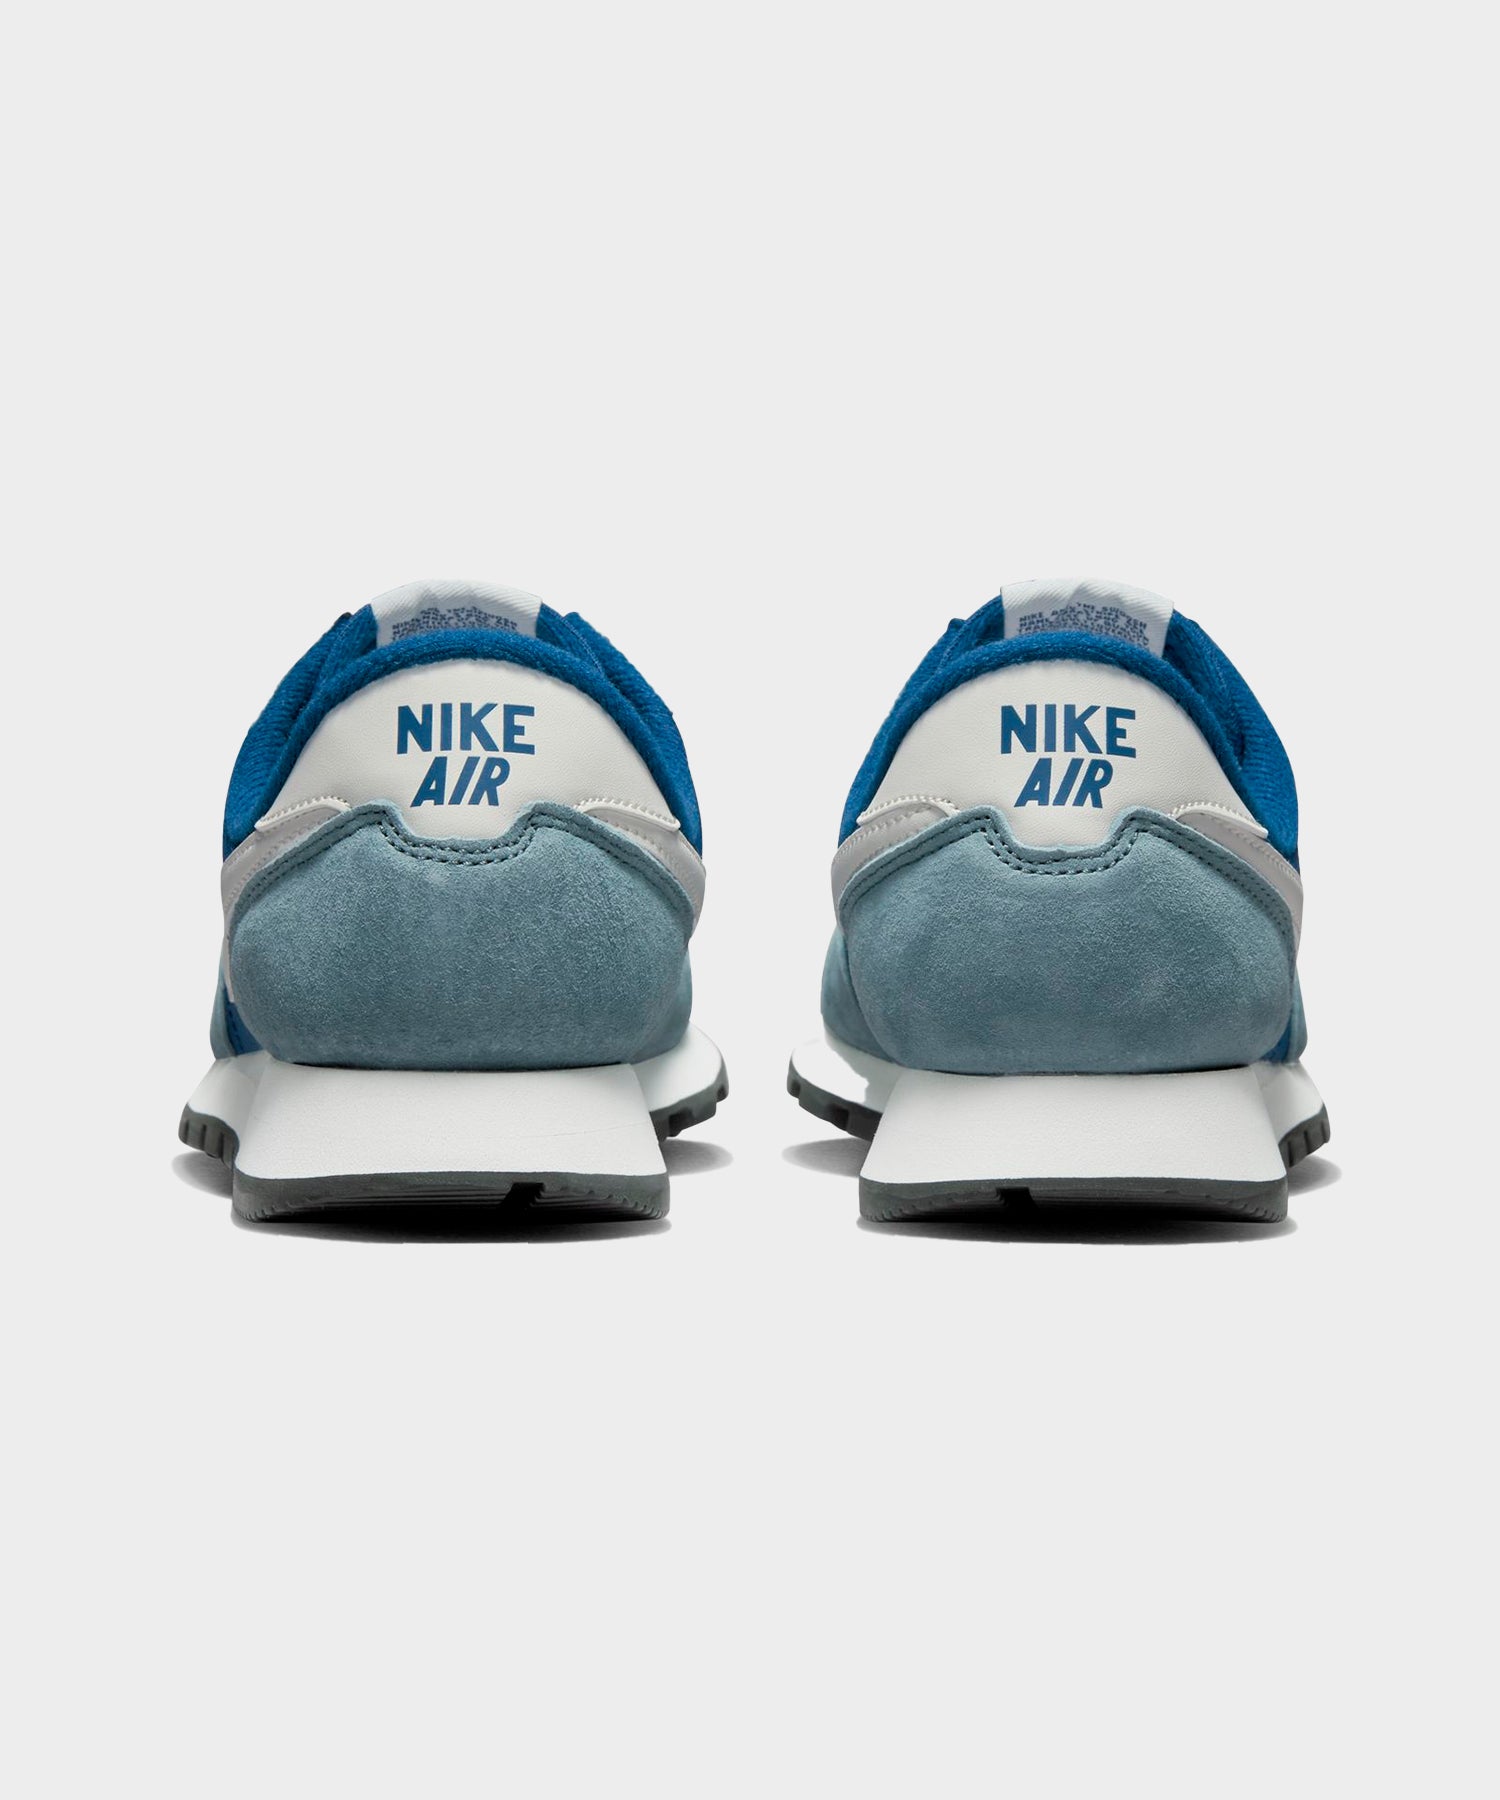 Blue Nike Air Shoes.